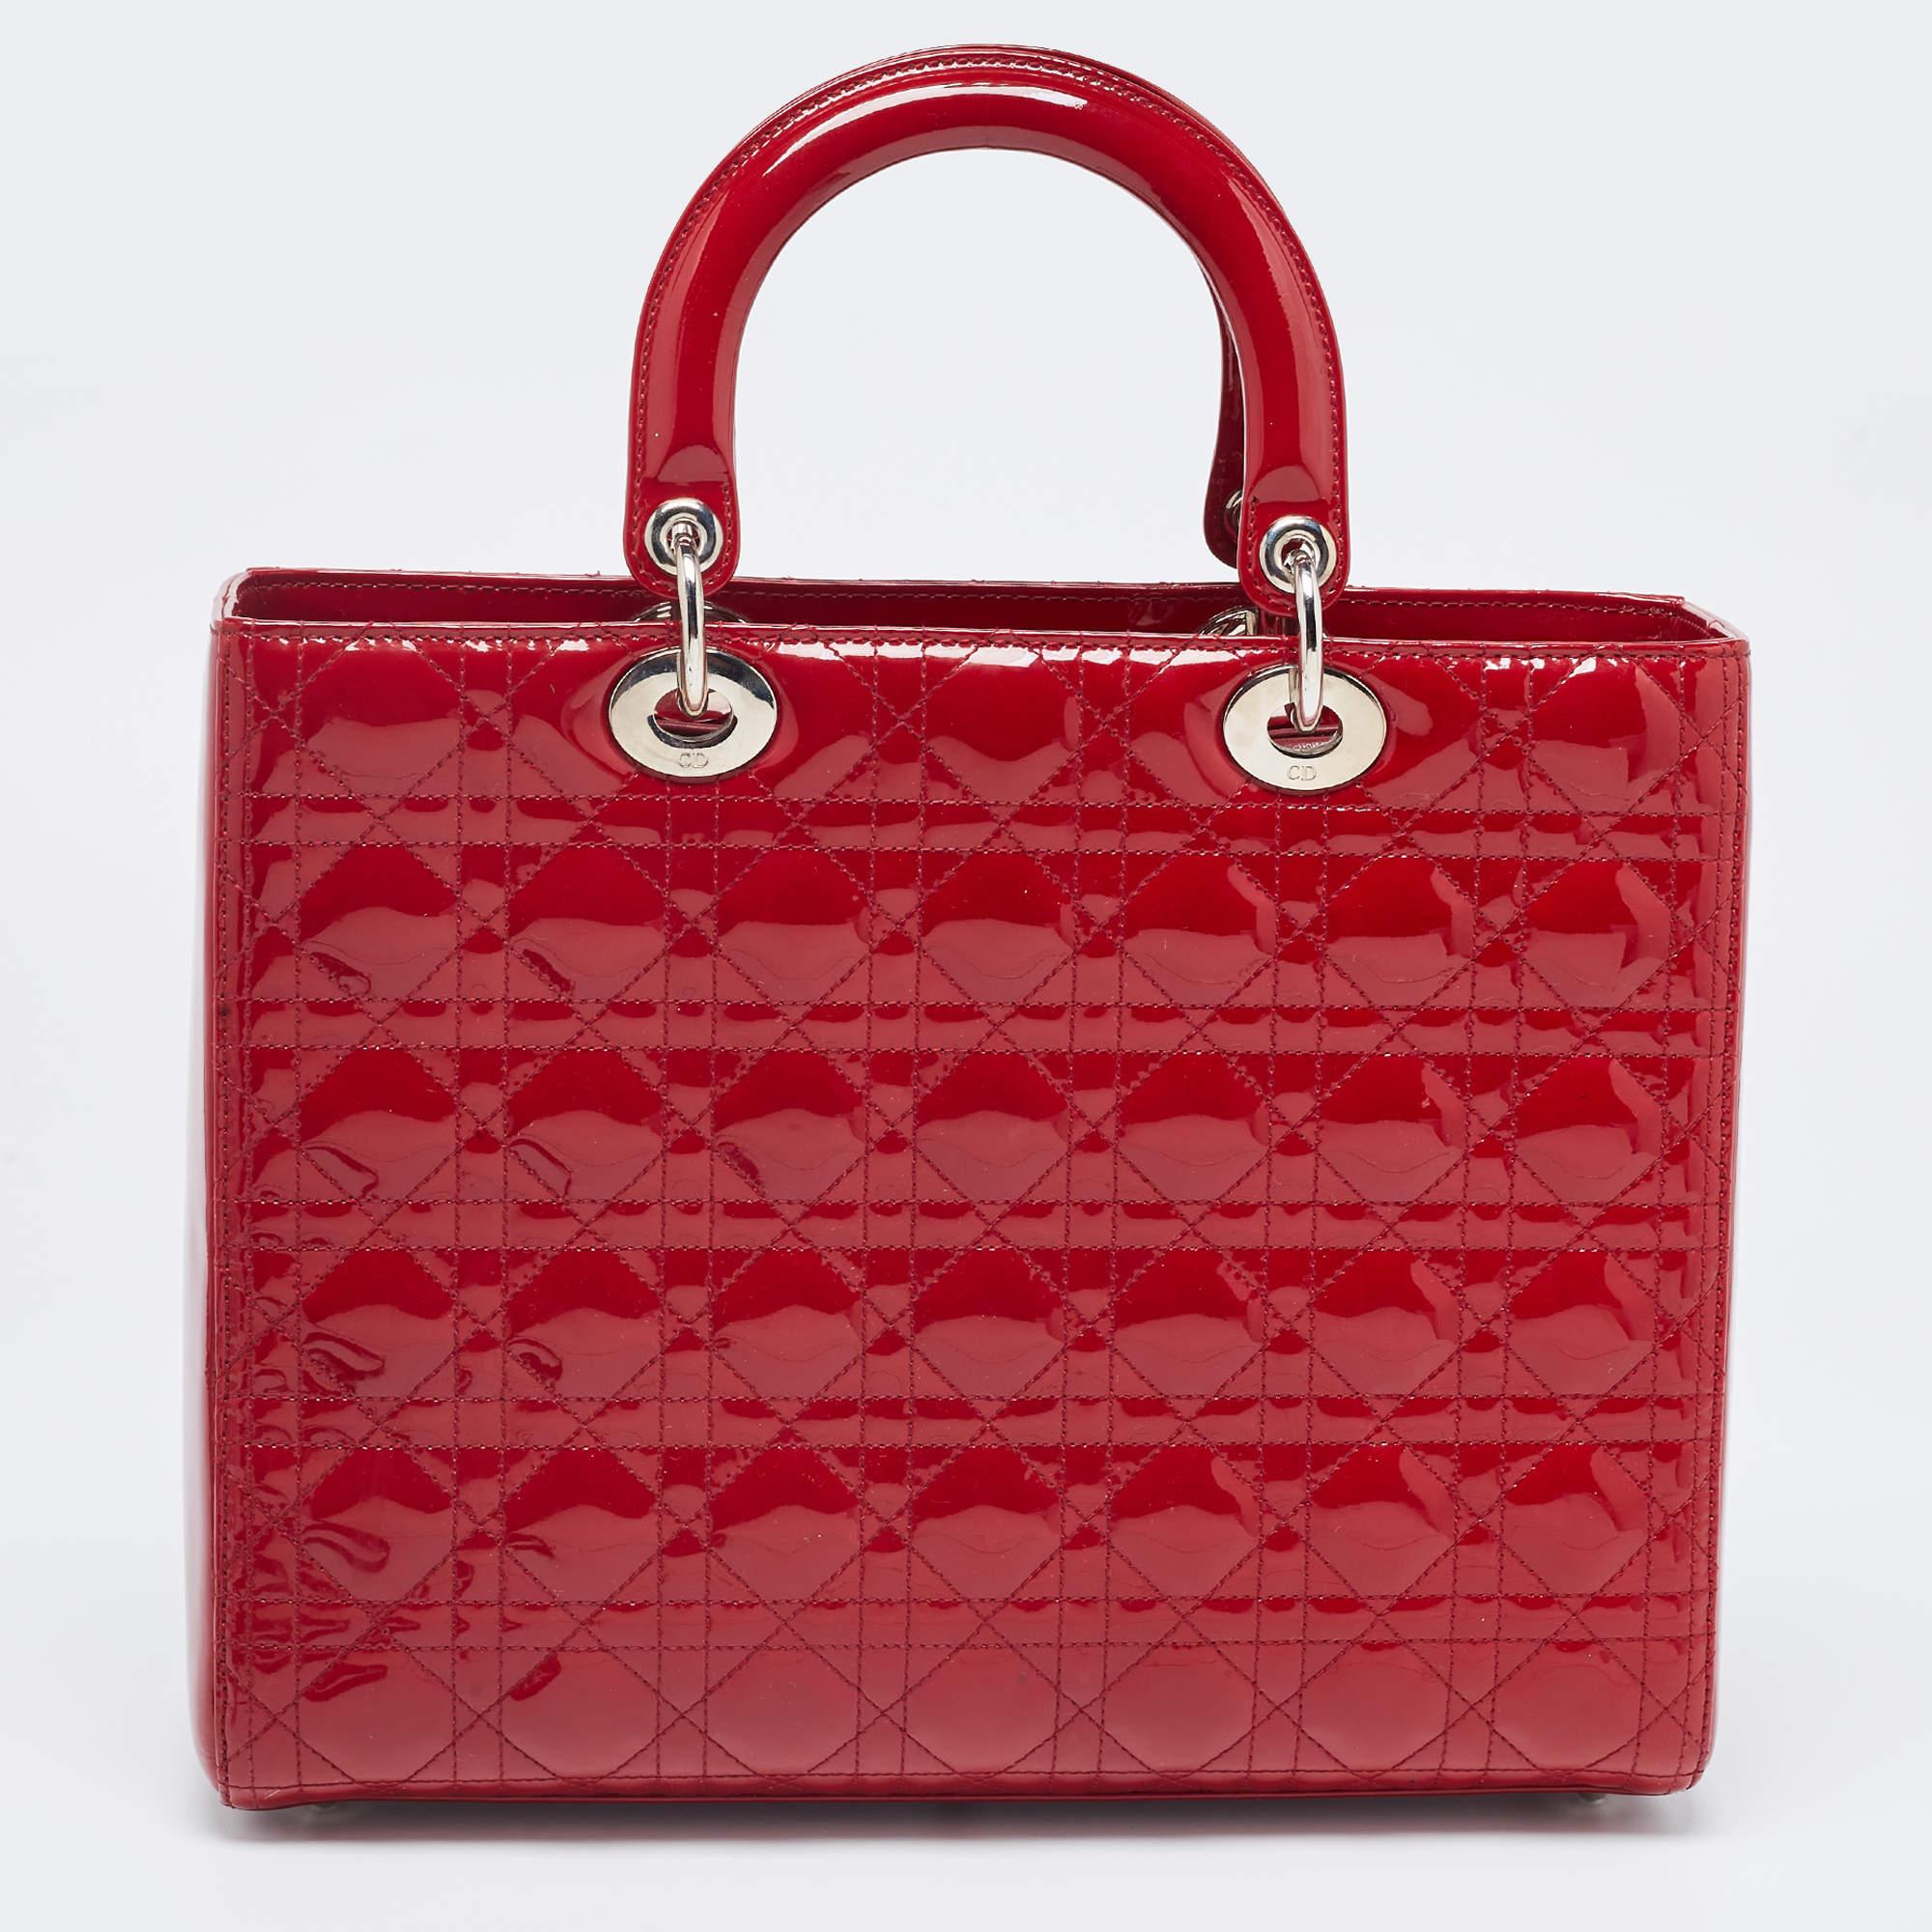 Un statut intemporel et un grand design caractérisent le fourre-tout Lady Dior. Il s'agit d'un sac emblématique dans lequel les gens continuent d'investir à ce jour. Nous avons ici ce grand fourre-tout Lady Dior en cuir verni rouge. Le sac est doté